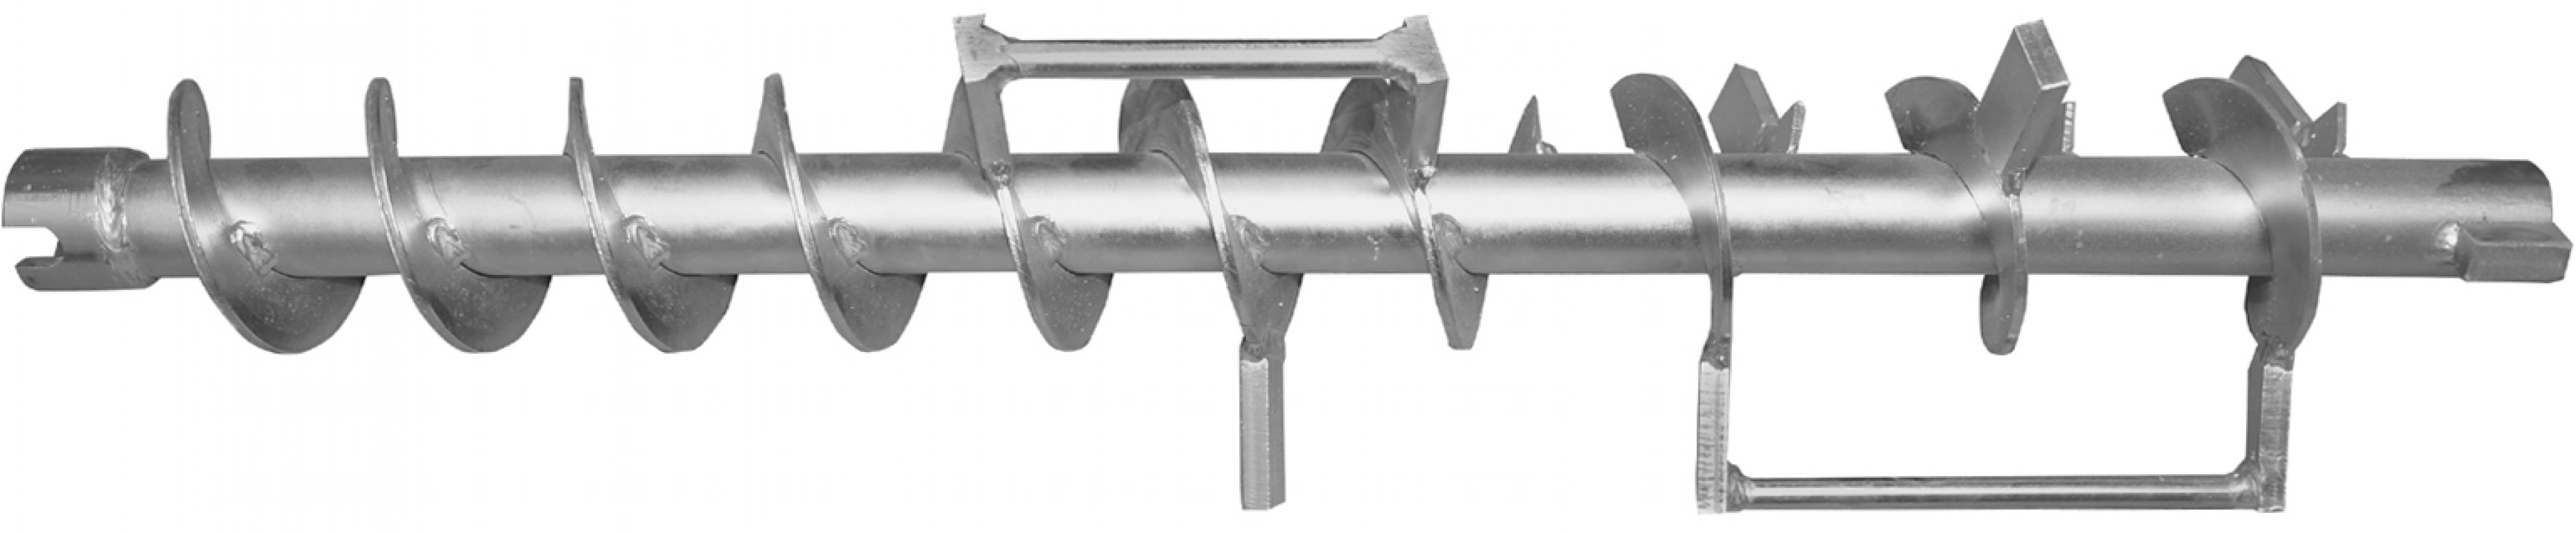 Stahl-Dosierwelle für inoMIX F100 - 60 l/min